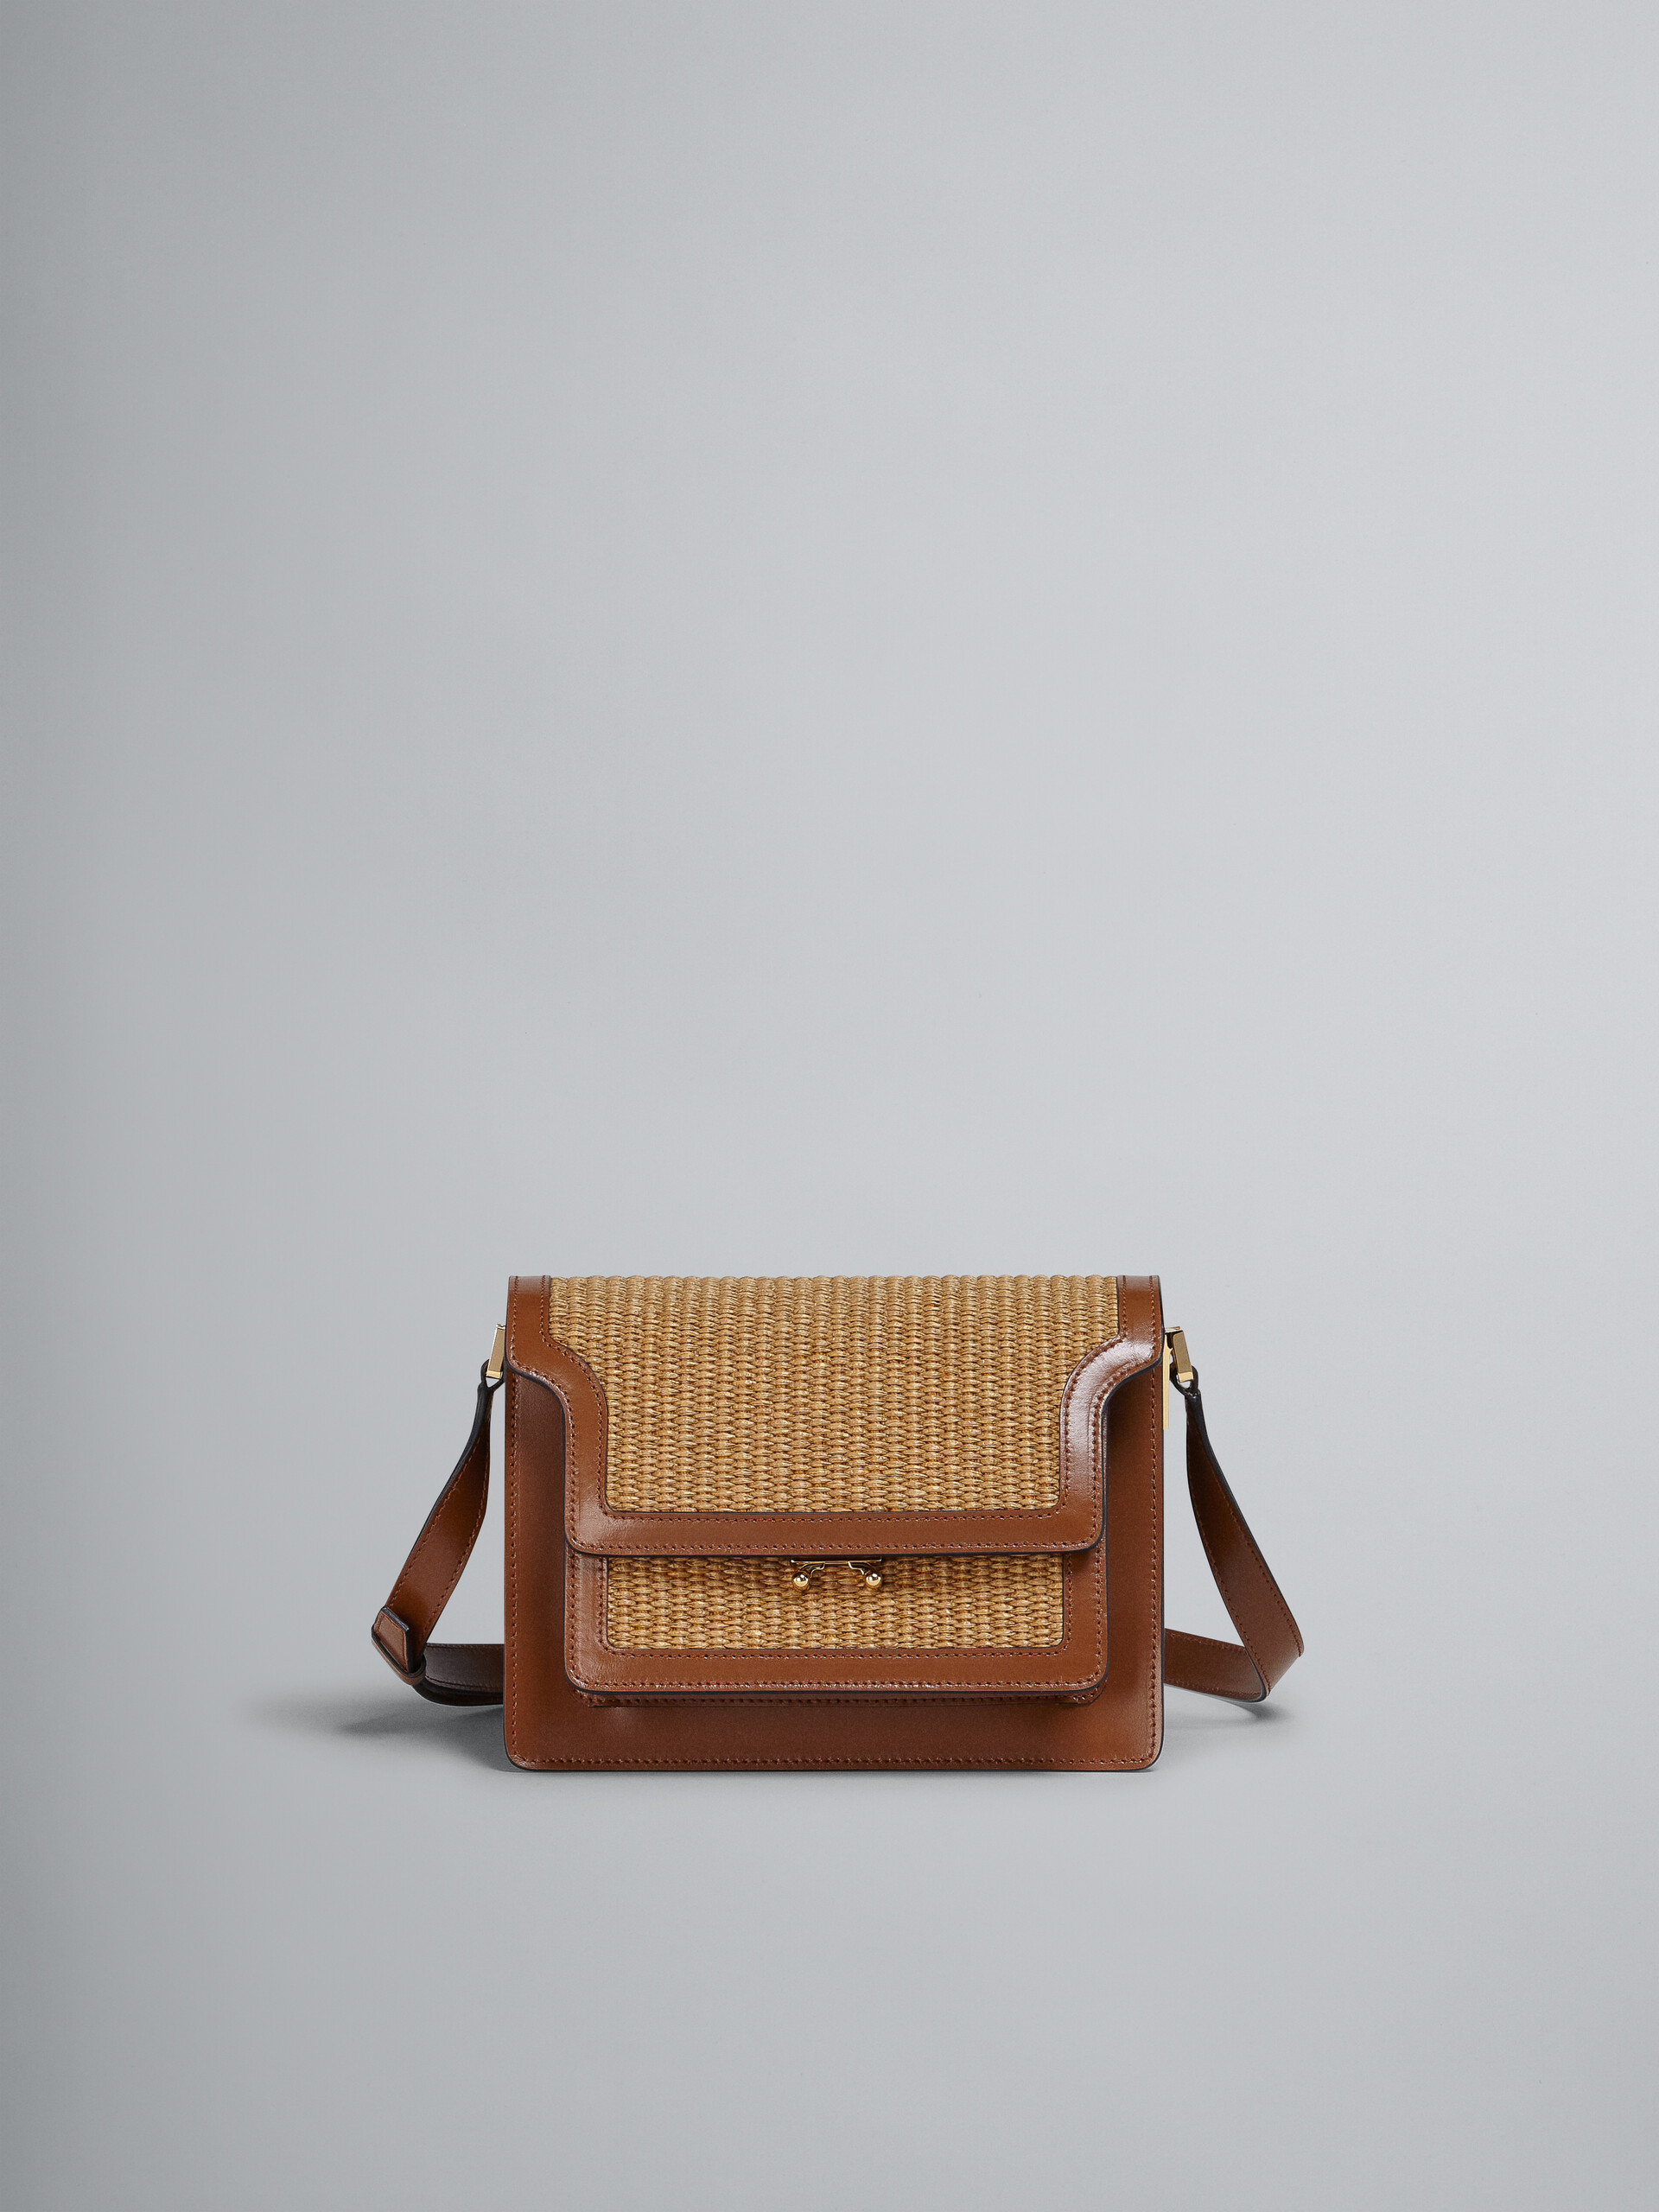 TRUNK SOFT medium bag in brown leather and raffia - Shoulder Bag - Image 1